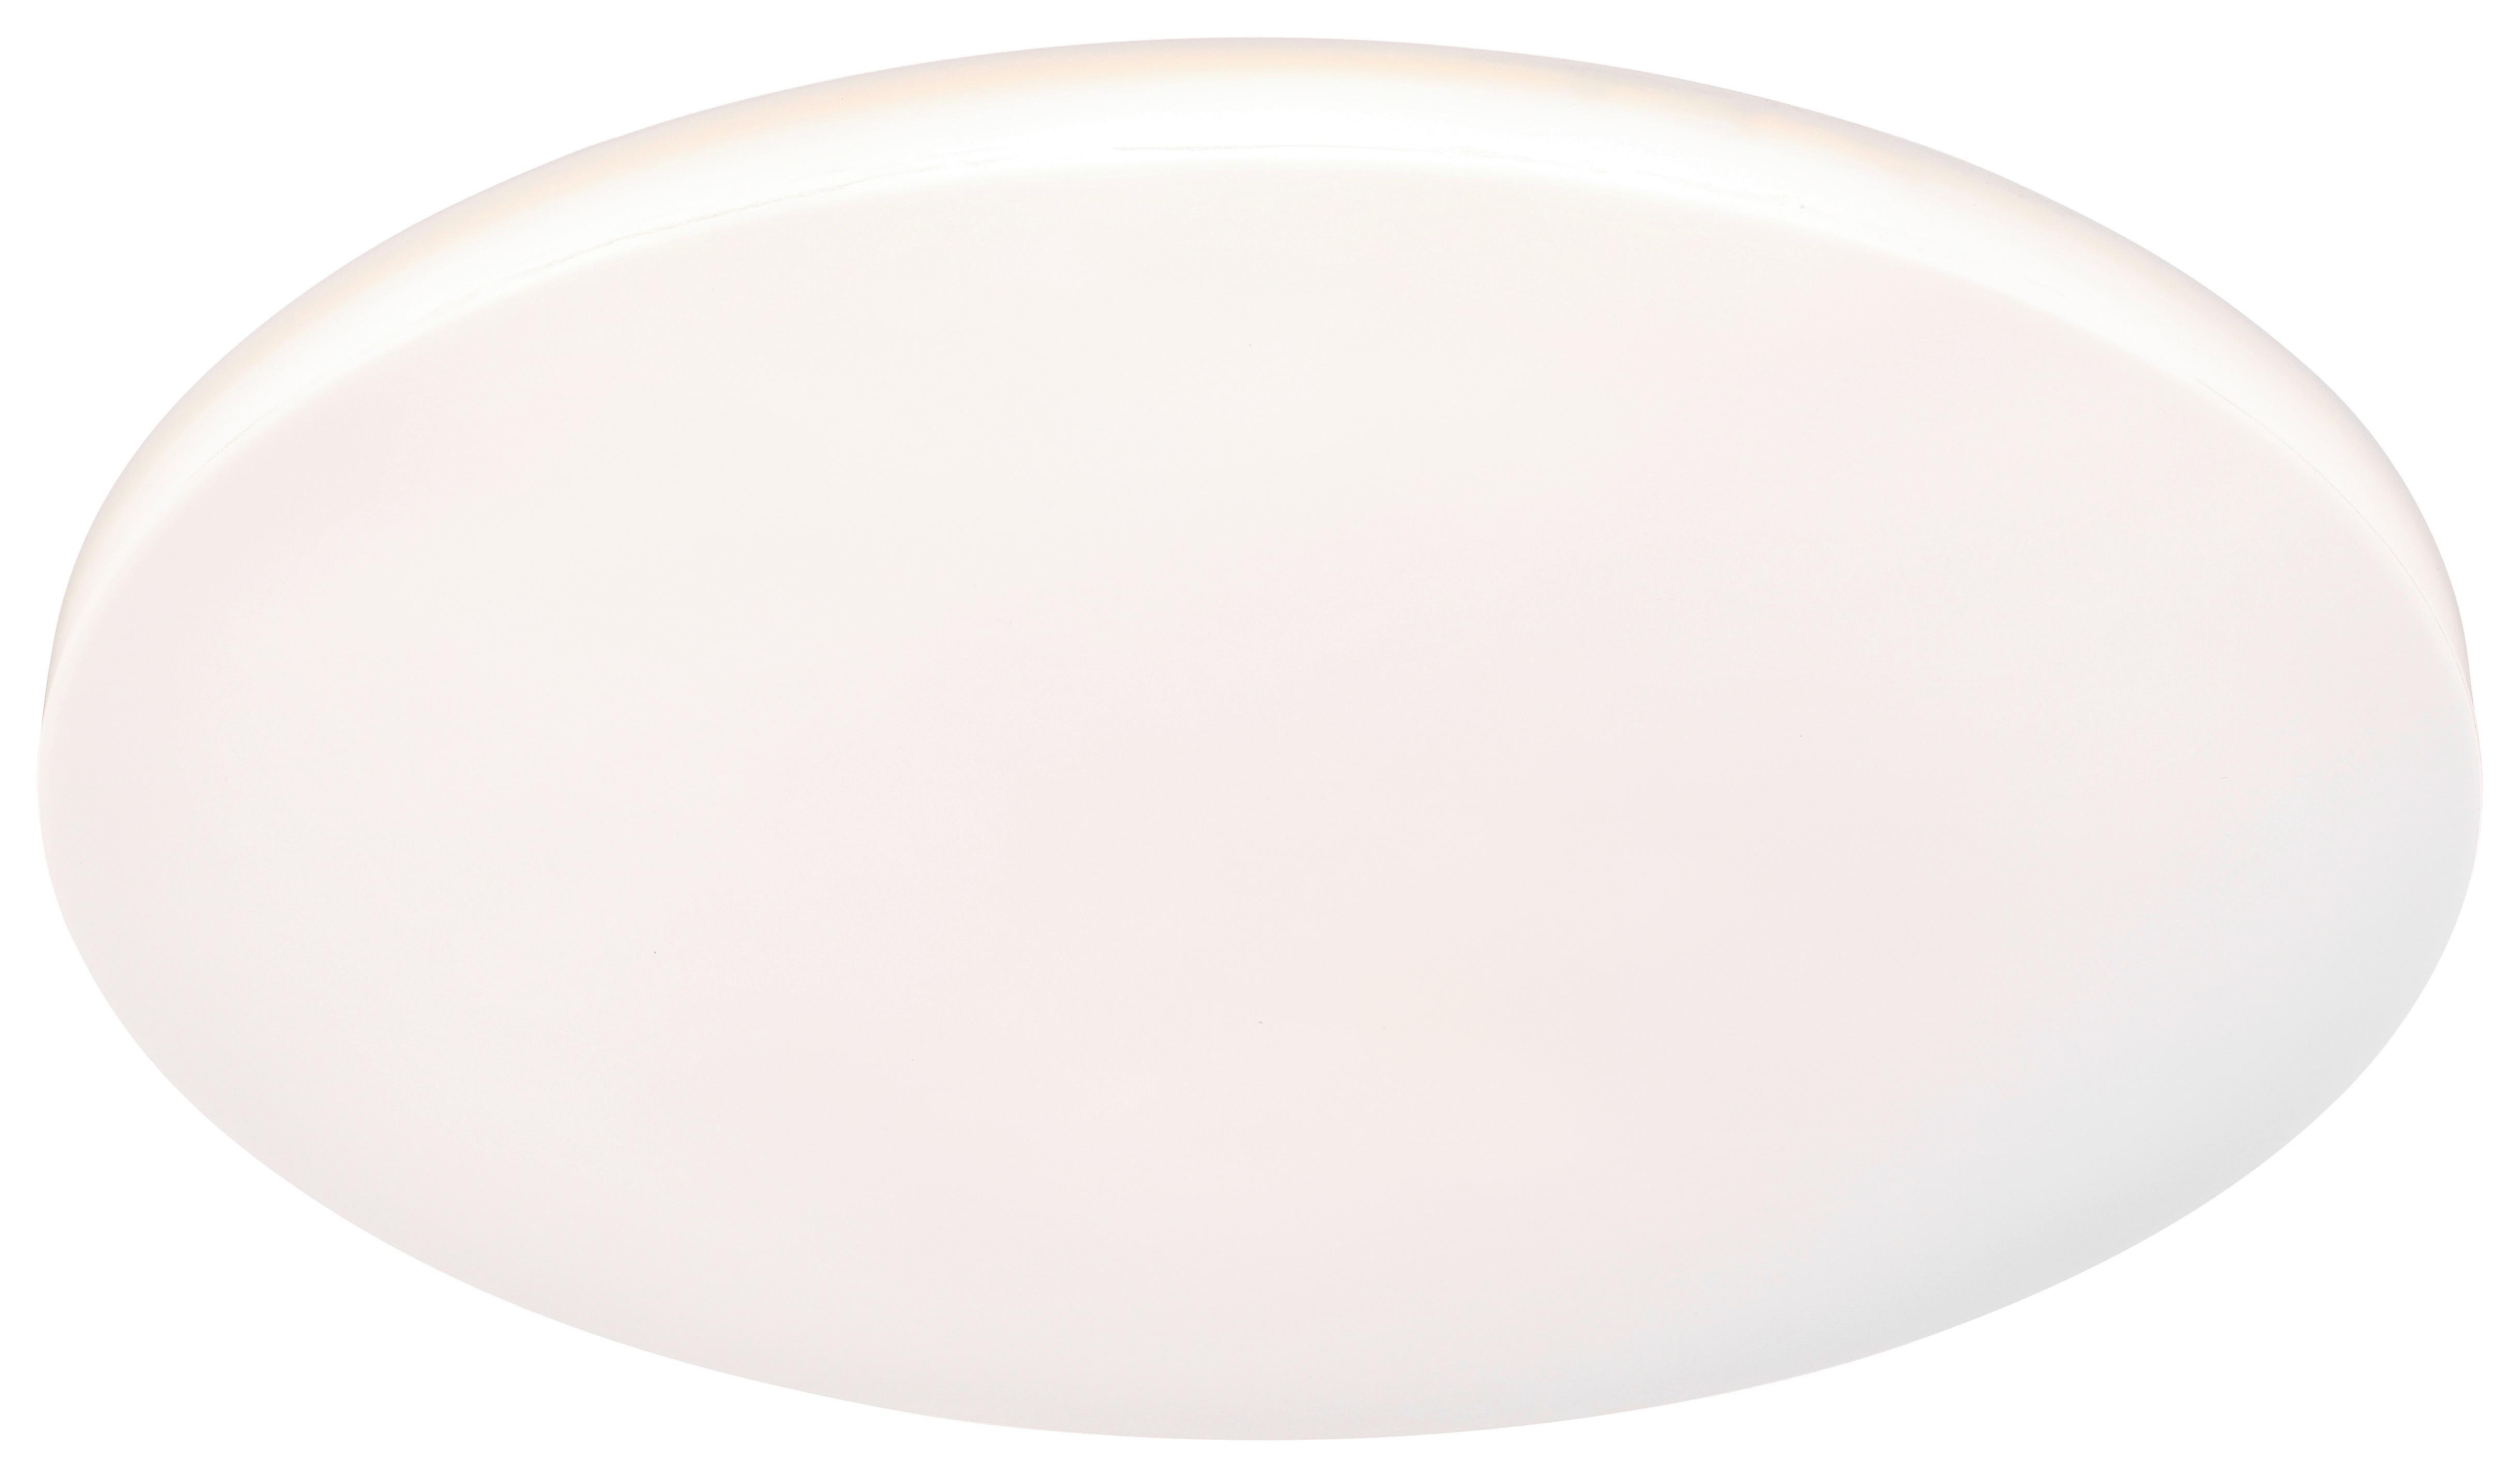 LED-Deckenleuchte Marge max. 38 Watt - Weiß, MODERN, Kunststoff/Metall (68/8cm) - Premium Living